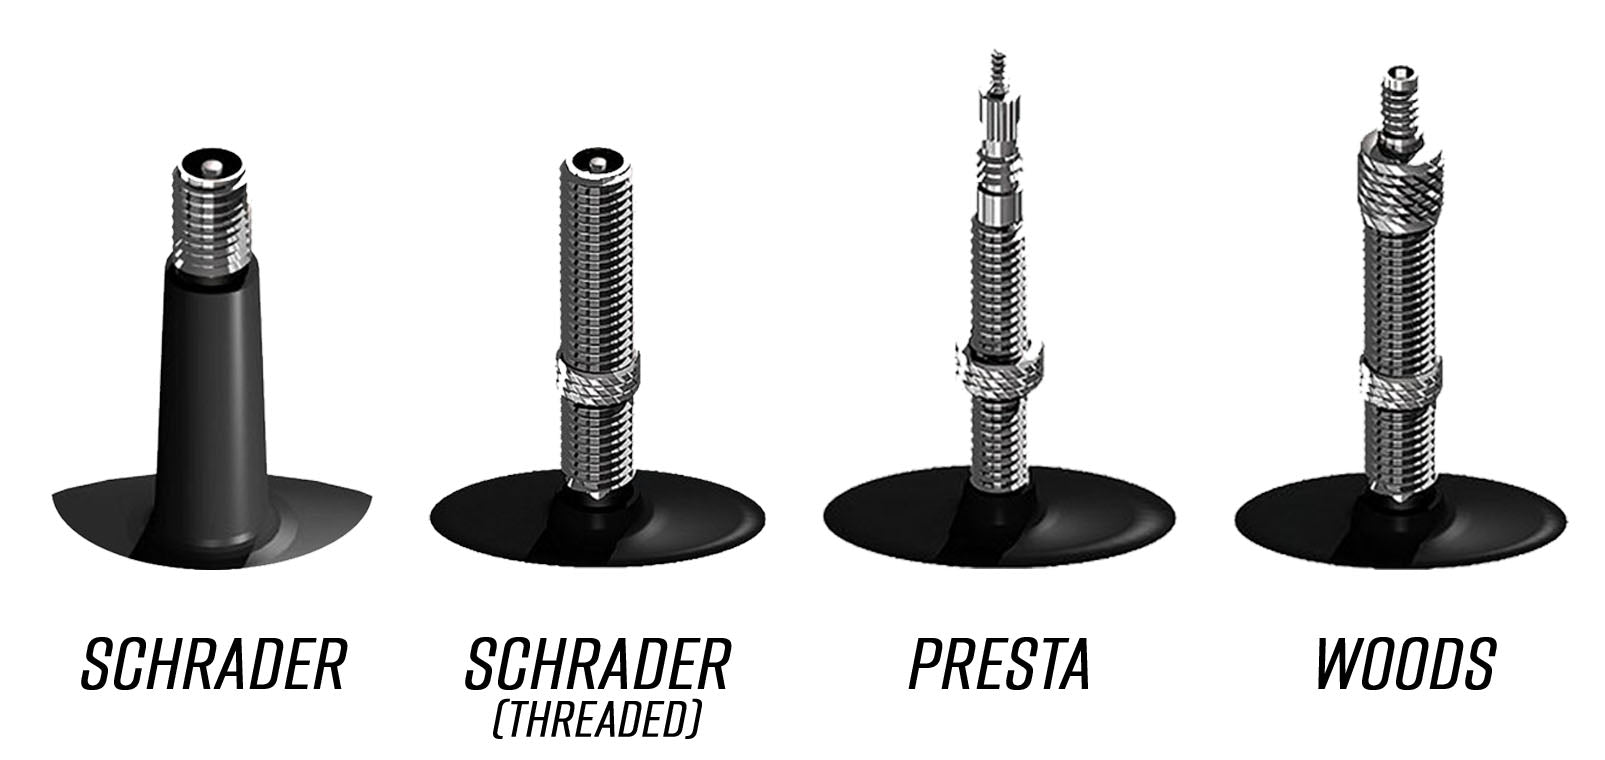 Schrader, Presta, Woods valve types